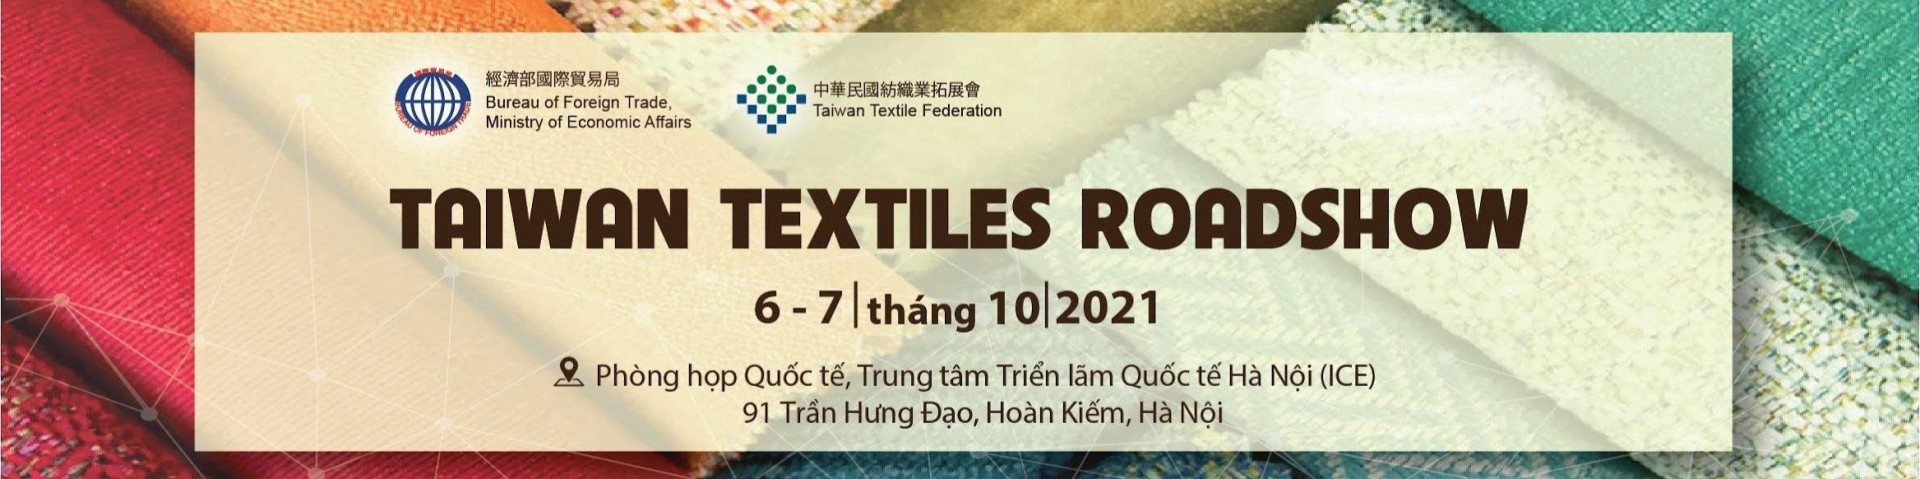 Taiwan Textiles Roadshow 2021 - Triển lãm & Hội nghị ngành Dệt May Việt Nam - Đài Loan